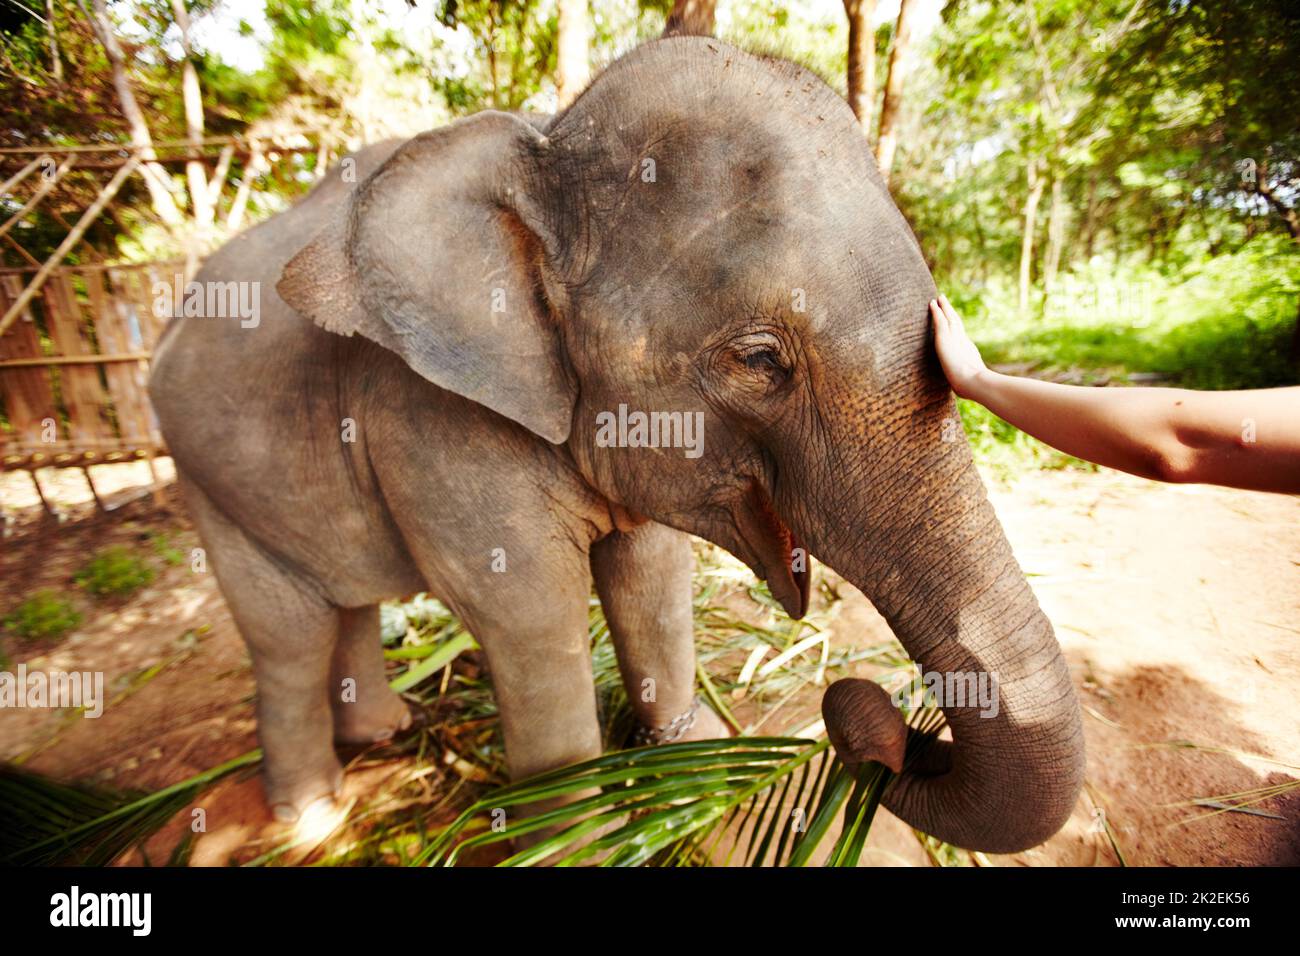 Indices maximaux Elepha. Un éco-touriste se faisant aller jusqu'à caresser un veau d'éléphant d'Asie - Thaïlande. Banque D'Images